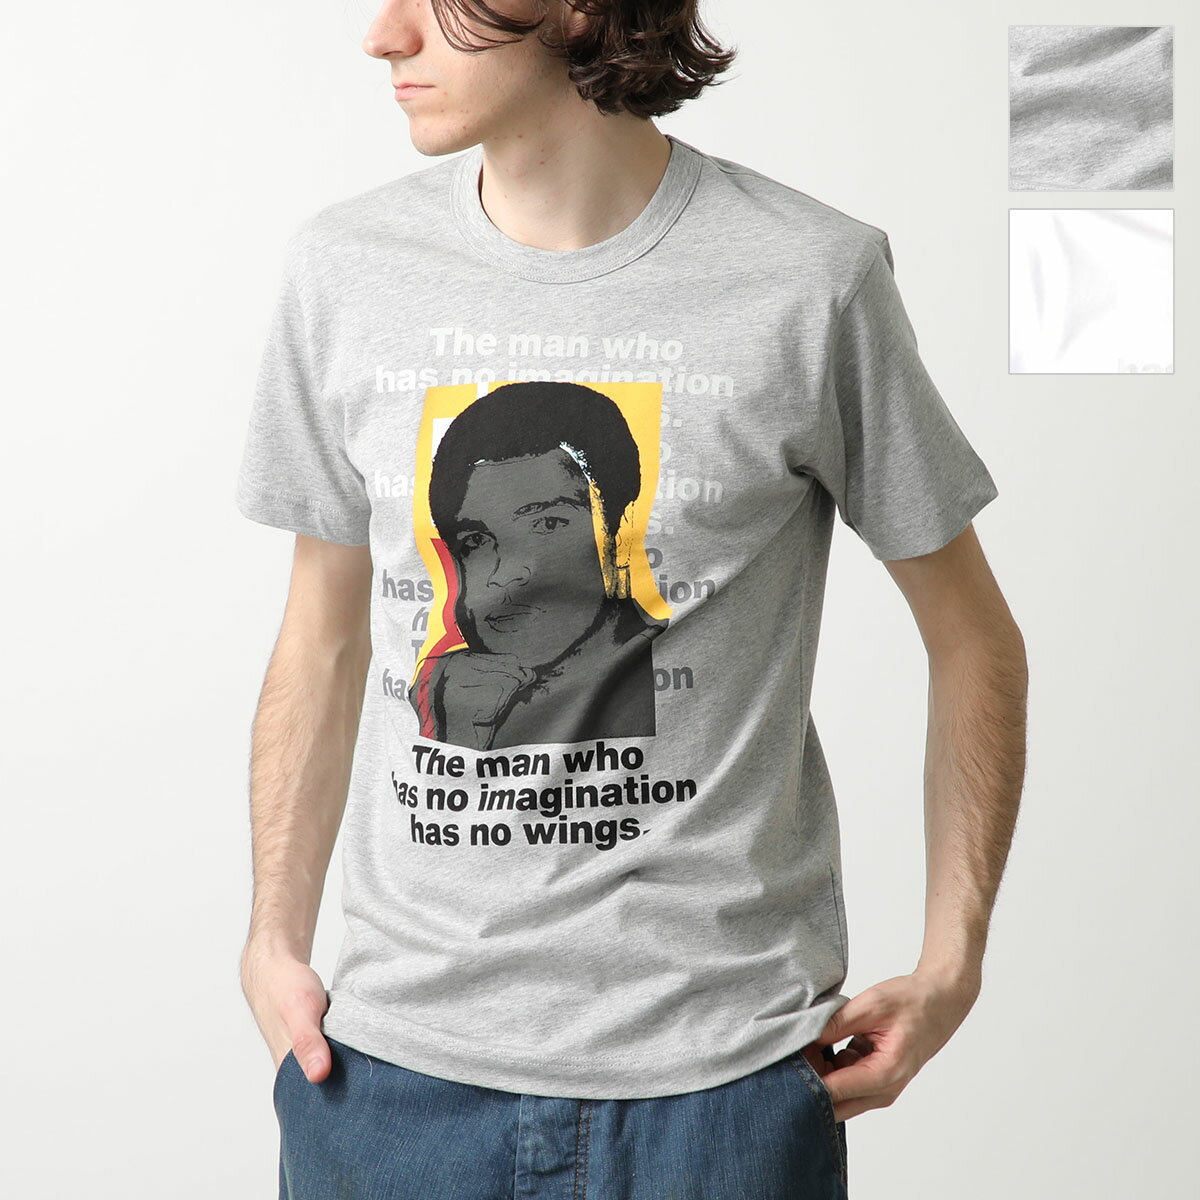 COMME des GARCONS SHIRT × Andy Warhol コムデギャルソン アンディ・ウォーホル コラボ 半袖 Tシャツ FM T004 S24 メンズ クルーネック カラー2色